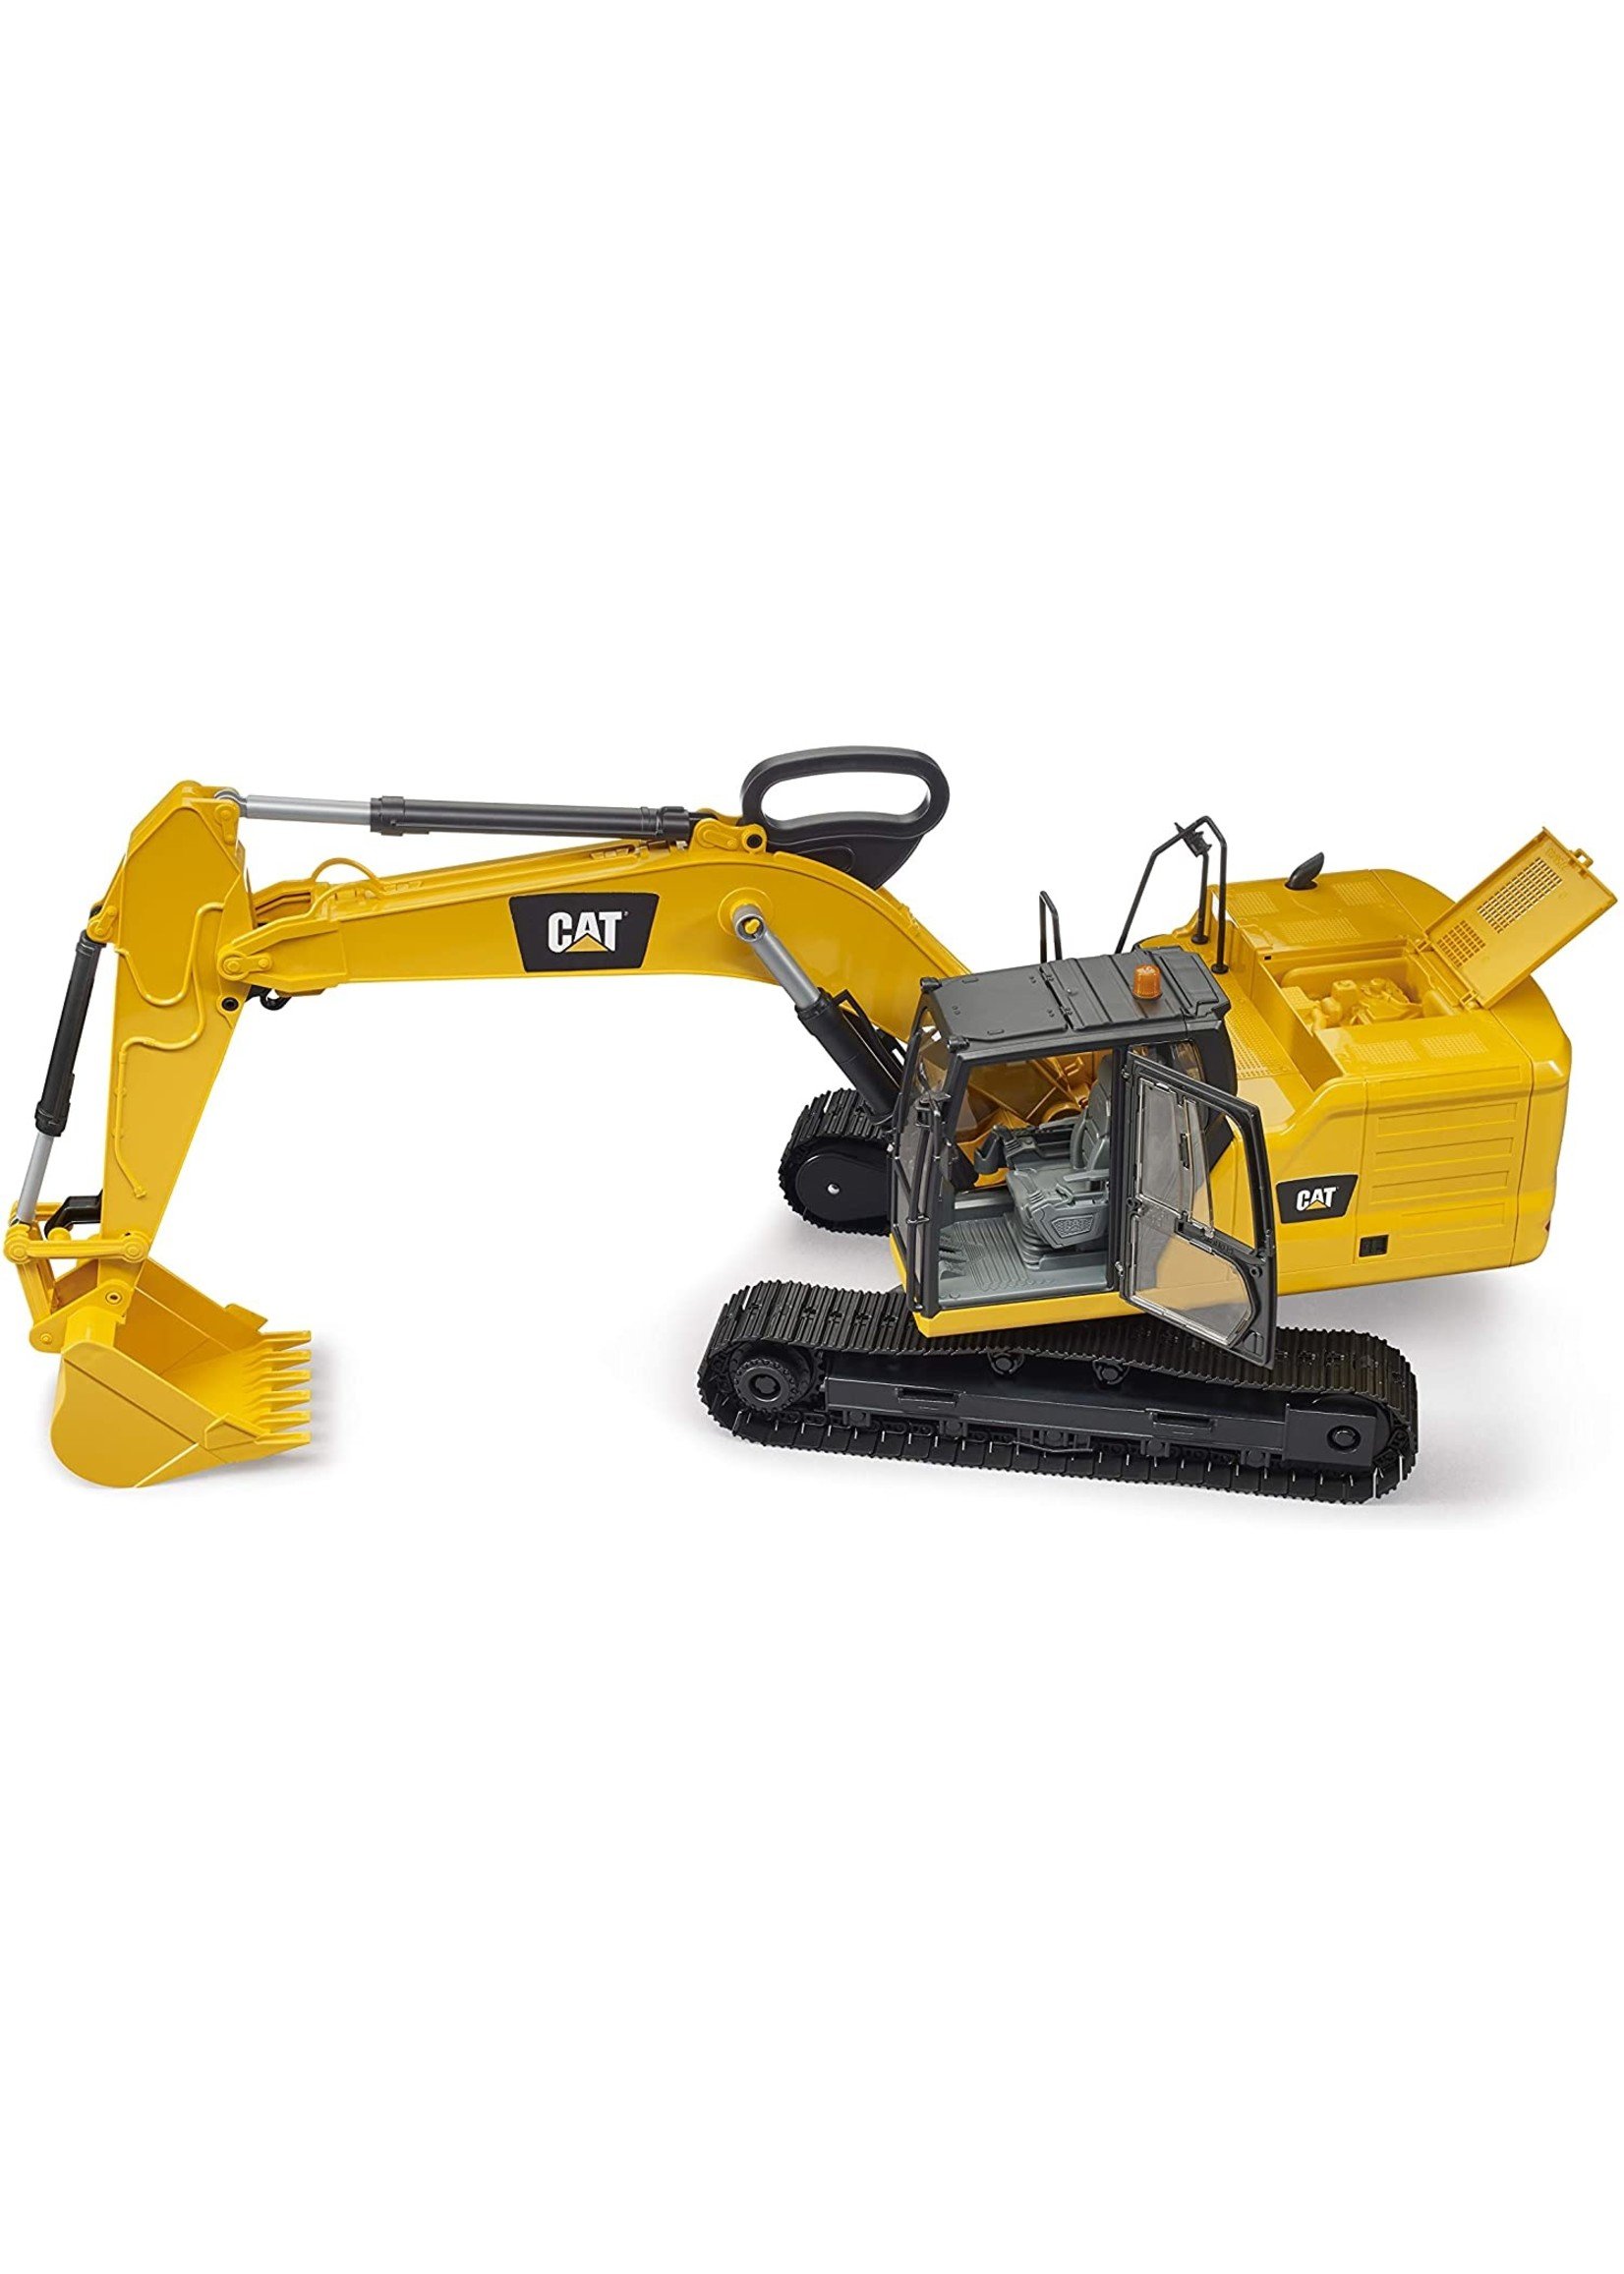 Bruder Toys 02484 - Caterpillar Excavator